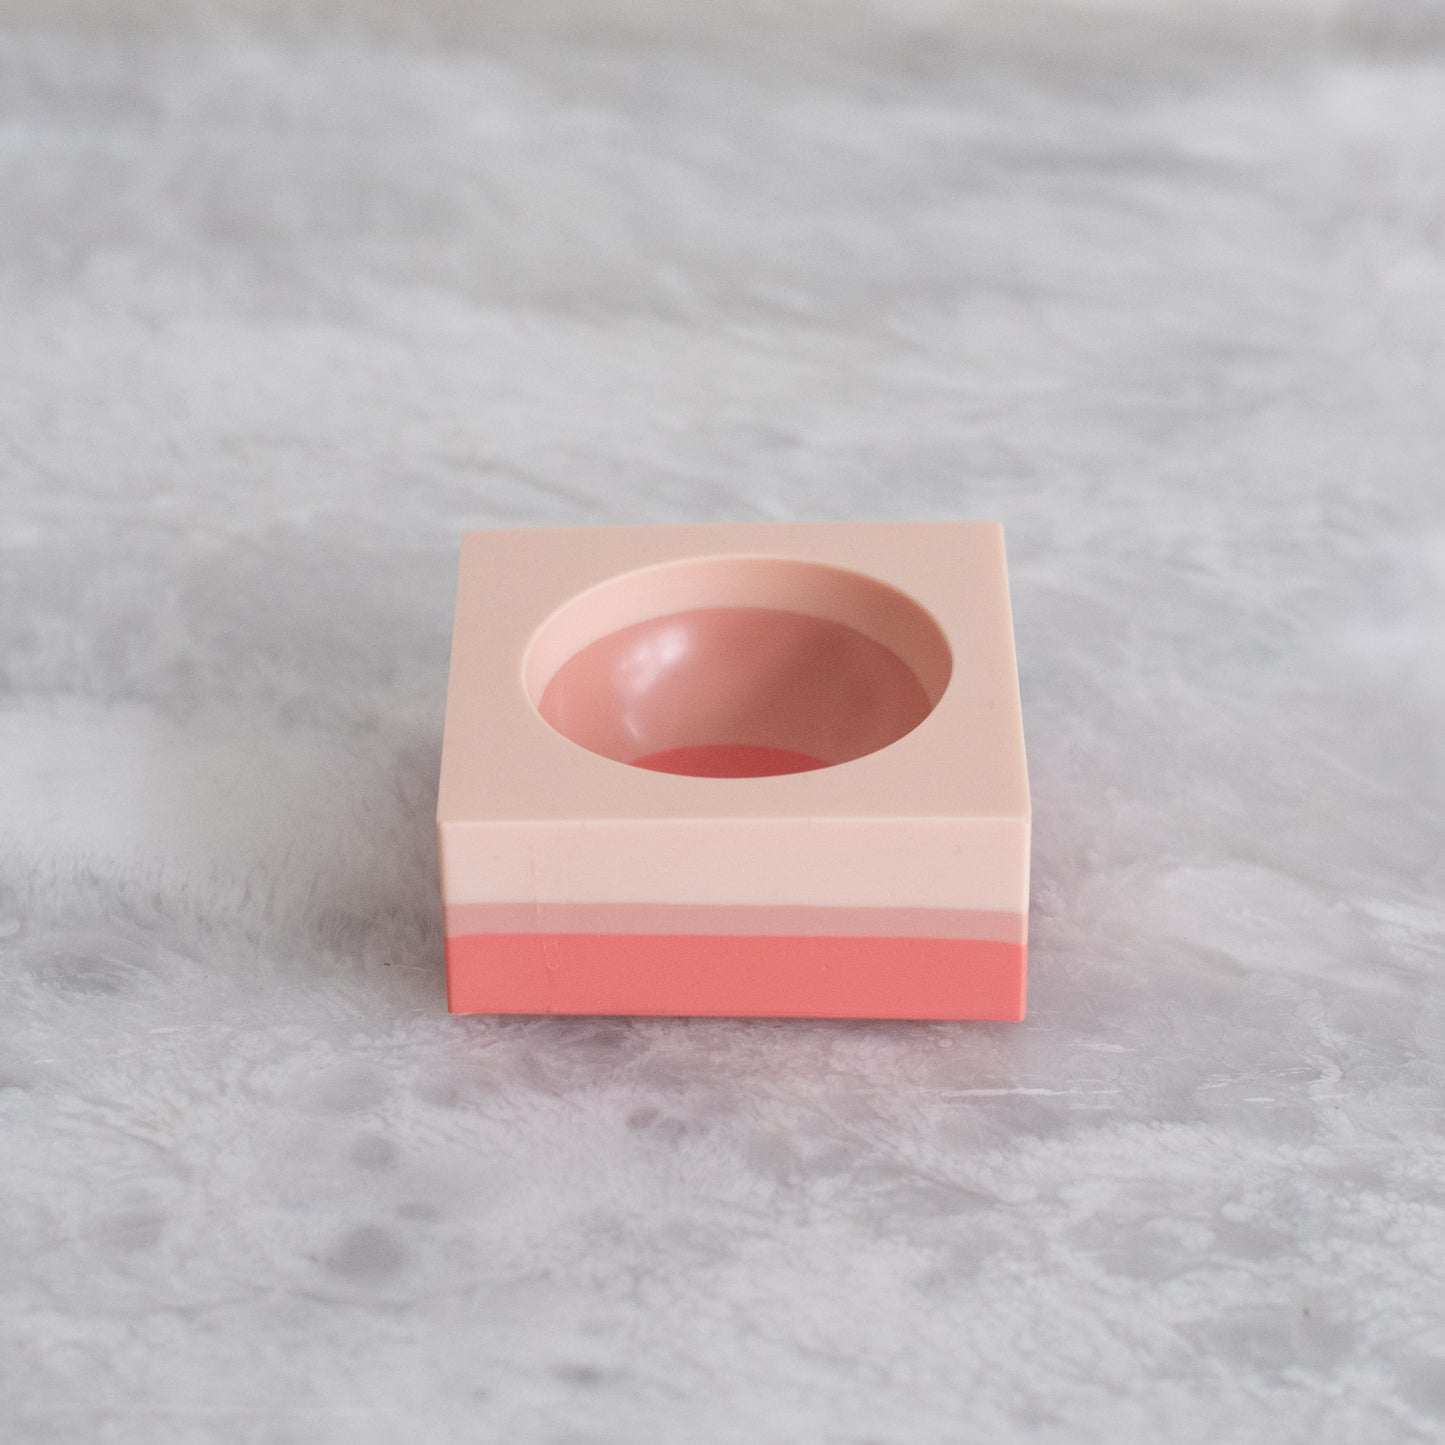 Tri-Colored Ring Dish in Peach